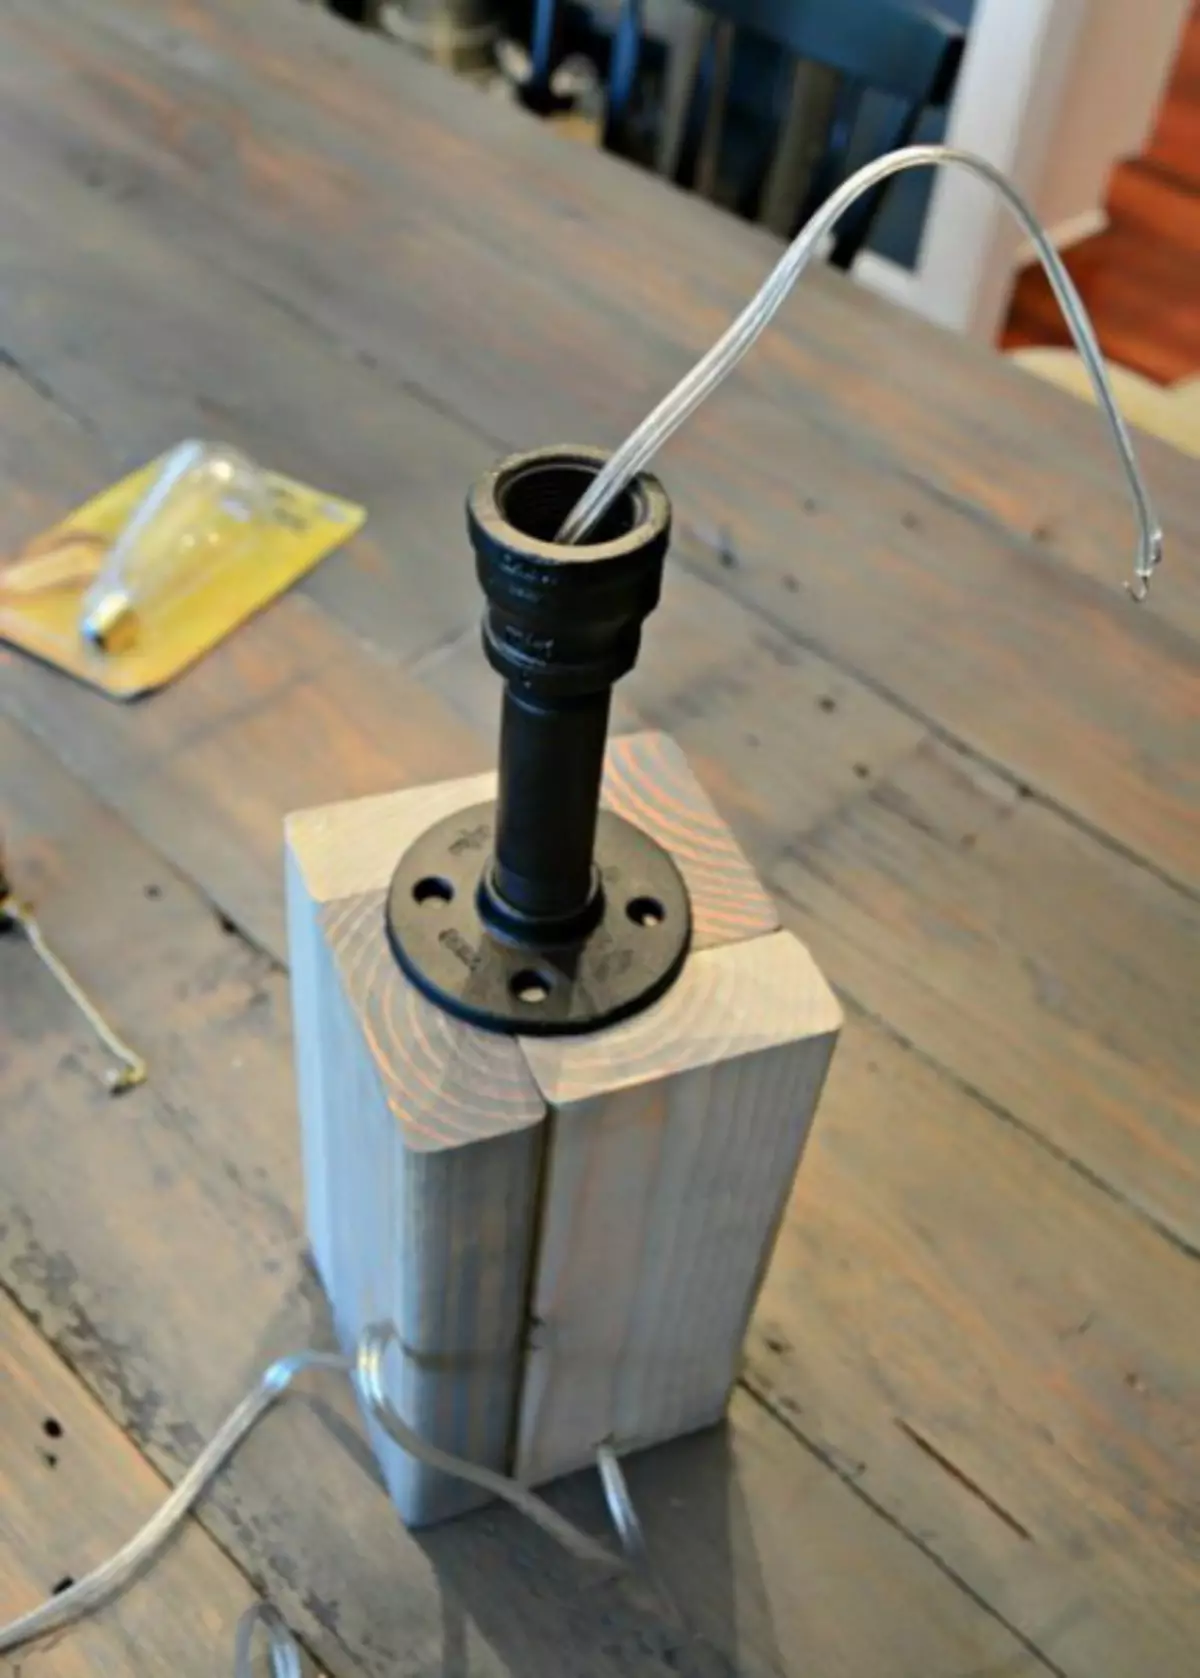 วิธีทำโคมไฟตั้งโต๊ะที่มีฐานไม้ (ระดับปริญญาโท, ภาพถ่าย)